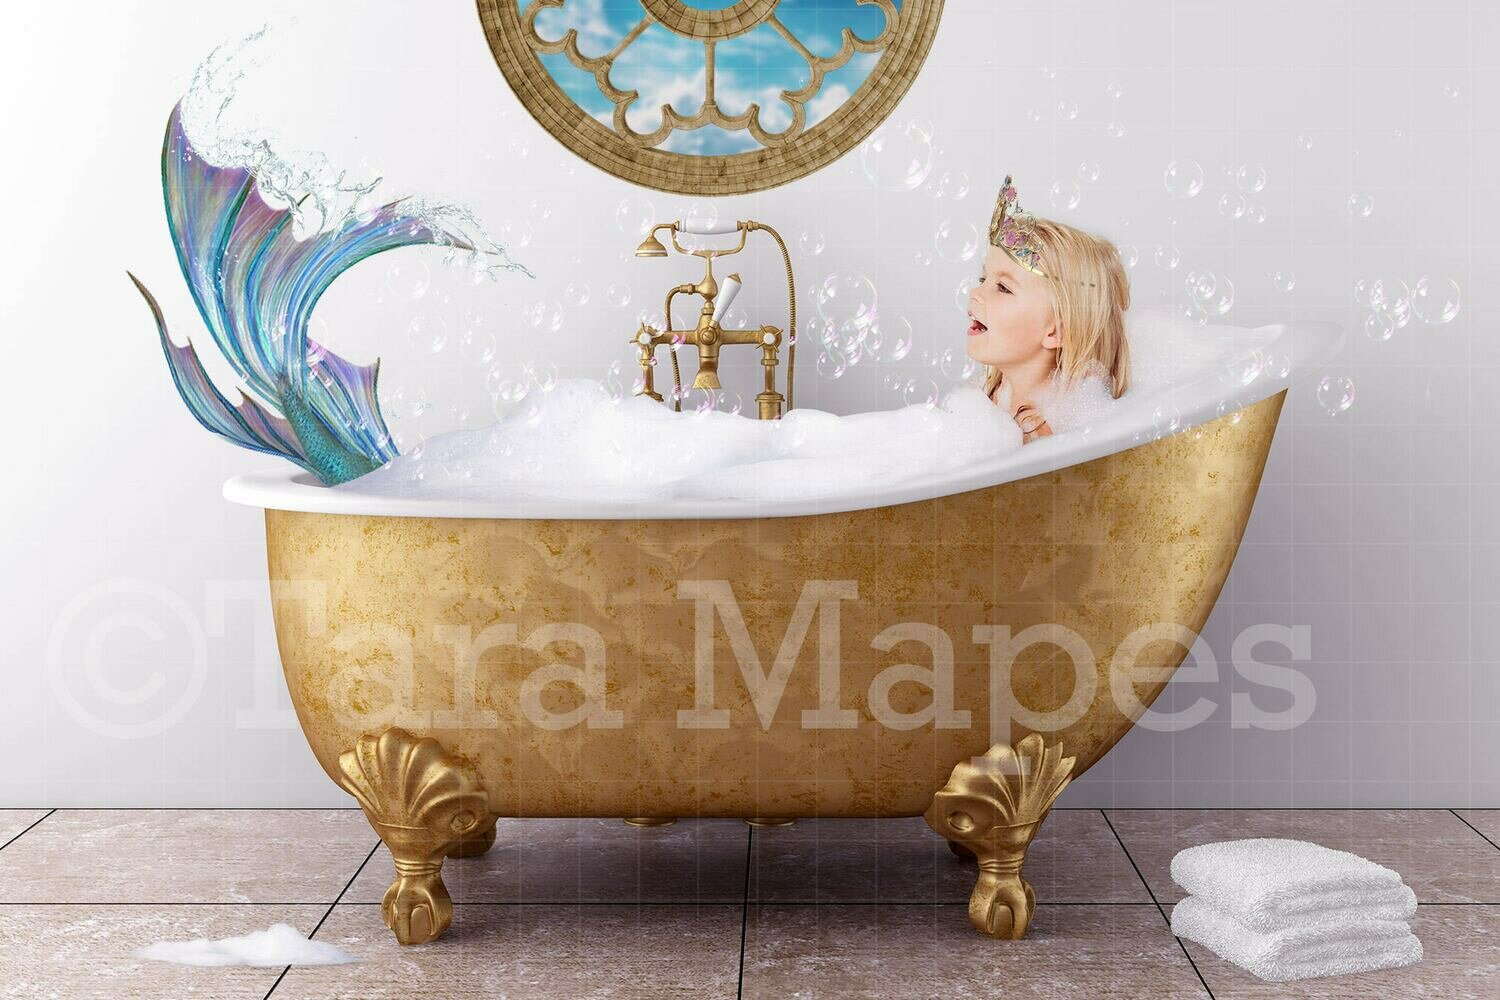 Bathtub Mermaid - Mermaid in Bath tub- Digital Background Backdrop